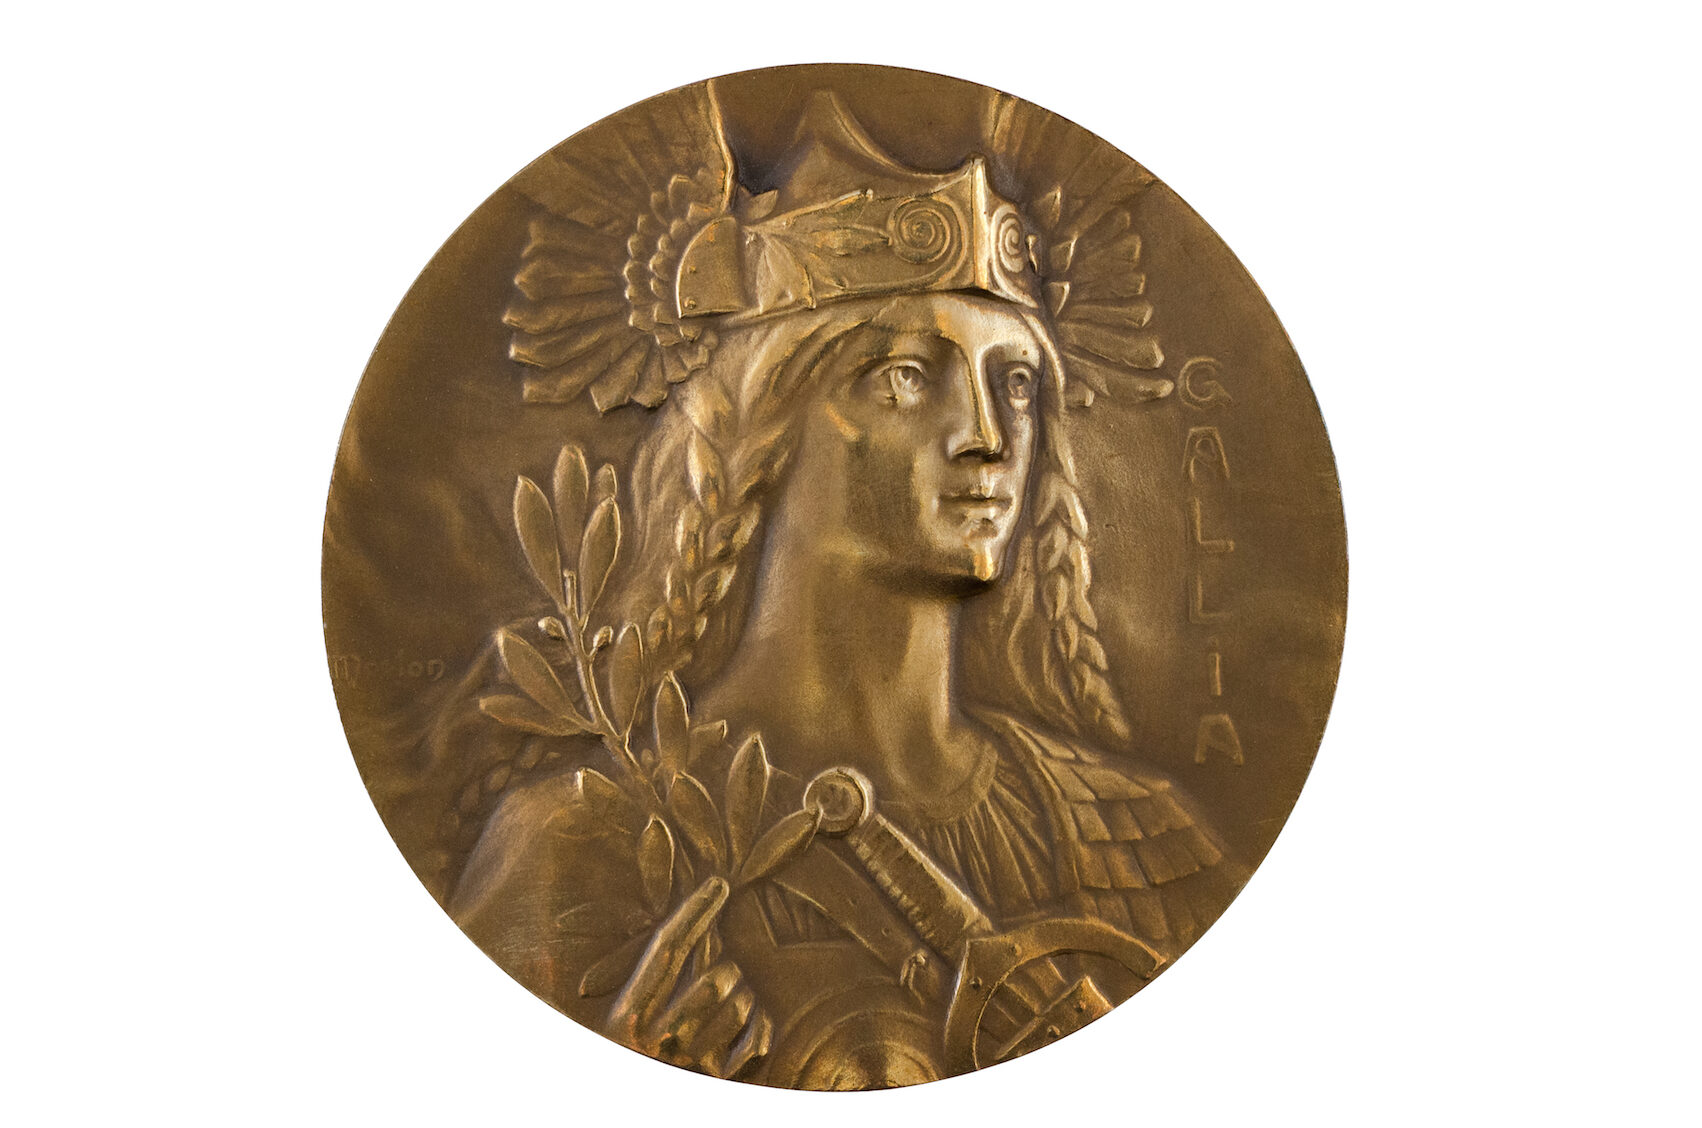 Pierre-Alexandre Morlon (1878-1951), Gallia, 1907. Médaille en bronze. Collection particulière. Photo service de presse. © B. Mahuet, musée des Ursulines de Mâcon